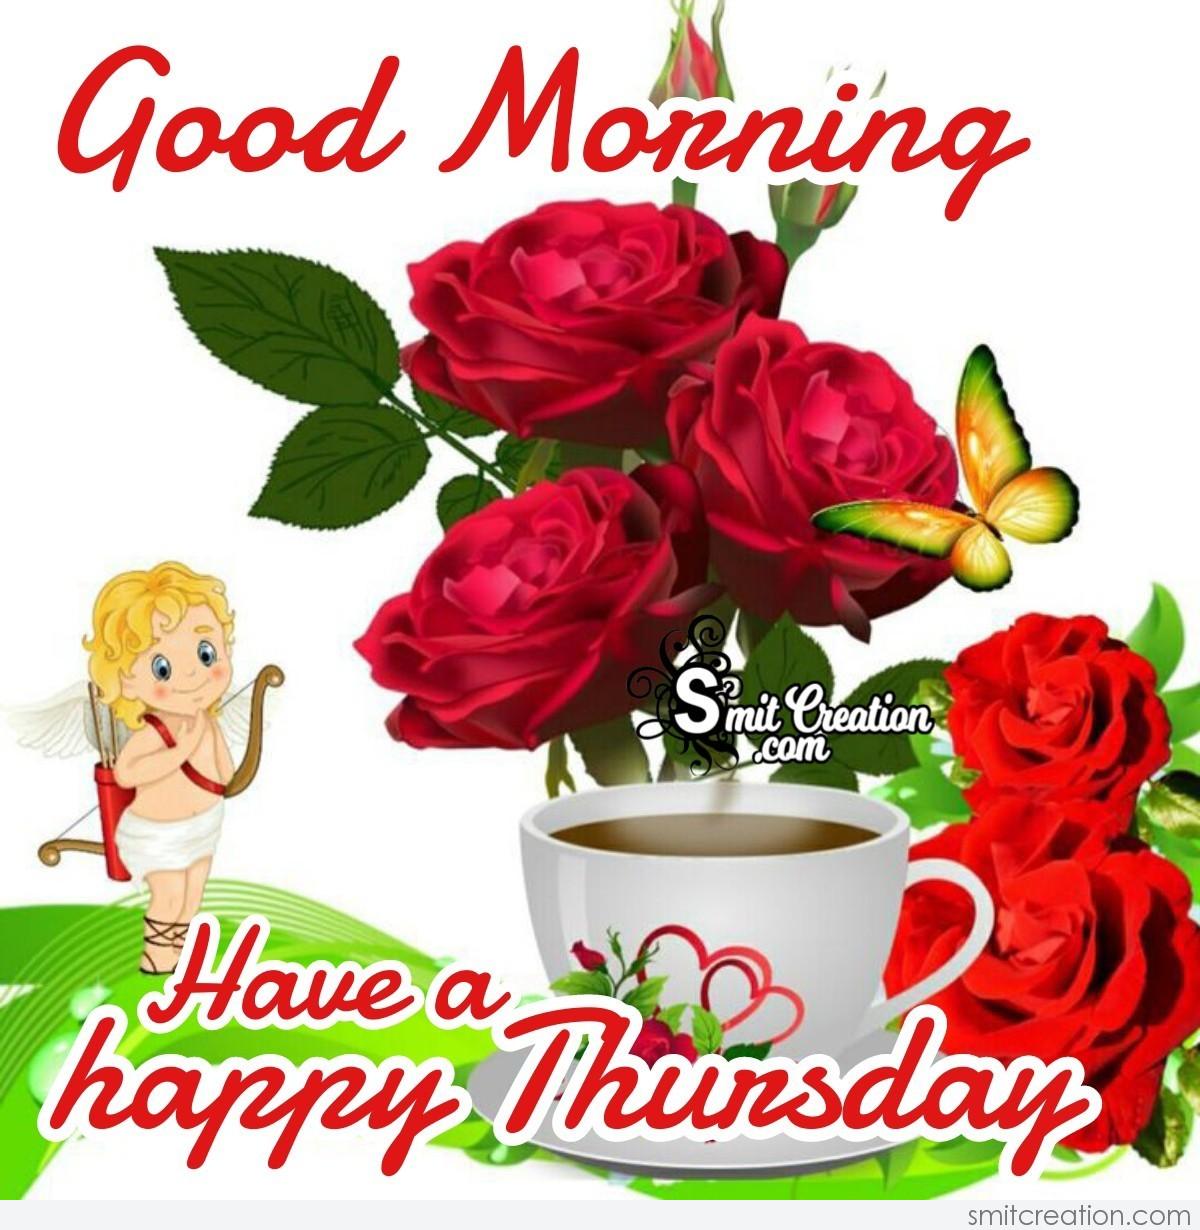 Good Morning Have A Happy Thursday - SmitCreation.com